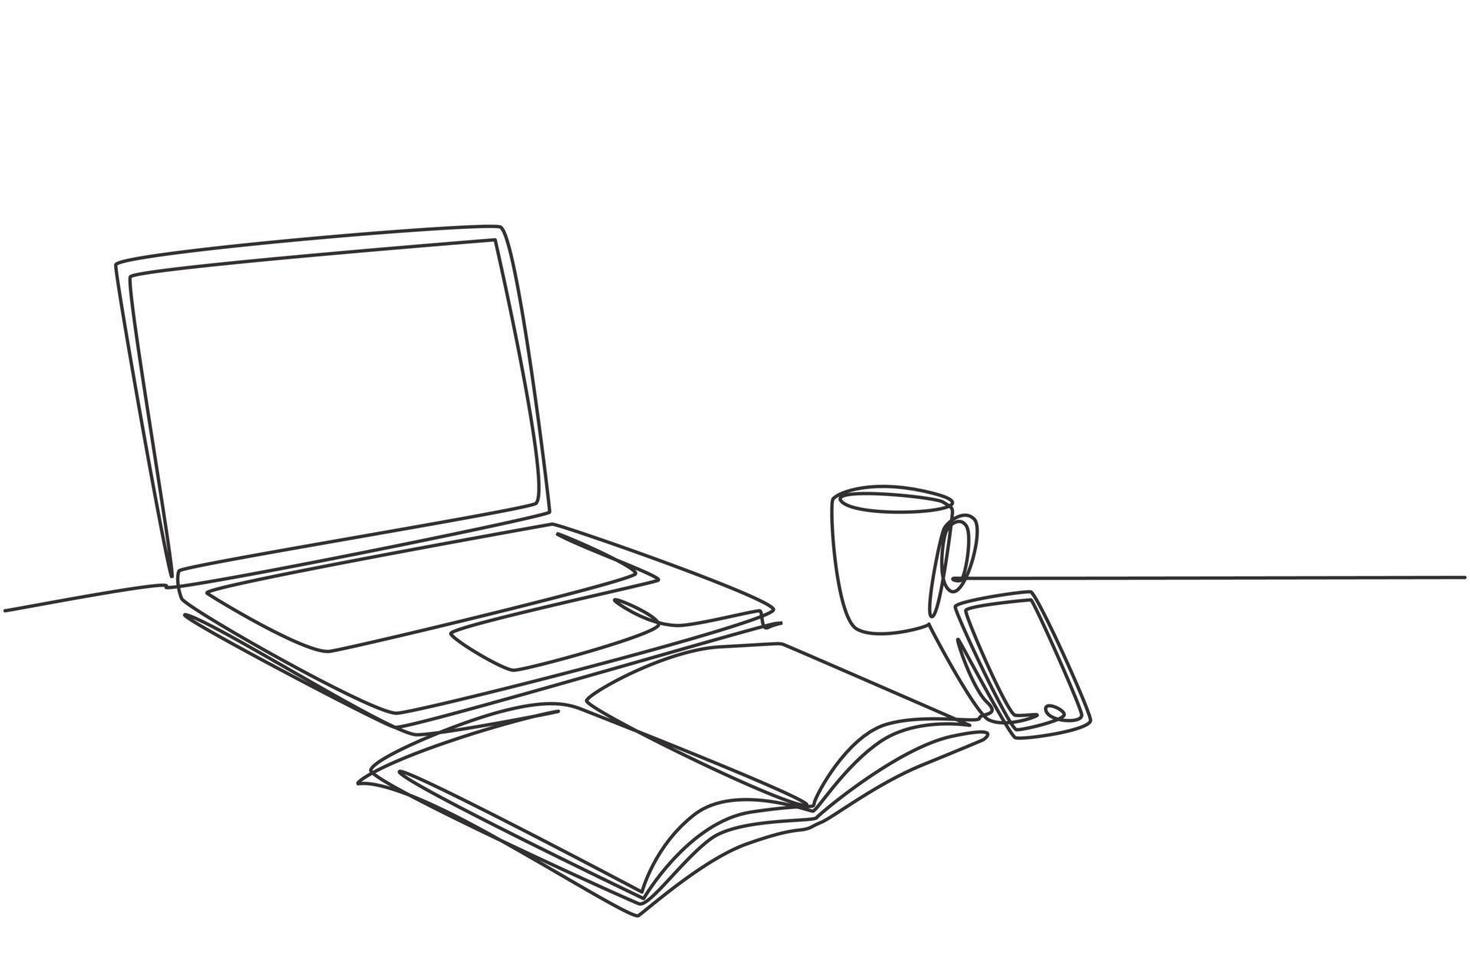 één enkele lijntekening van computerlaptop, smartphone en een kopje koffie en aan een zakelijk bureau. werkruimte tafel concept. doorlopende lijn tekenen grafisch ontwerp vectorillustratie vector